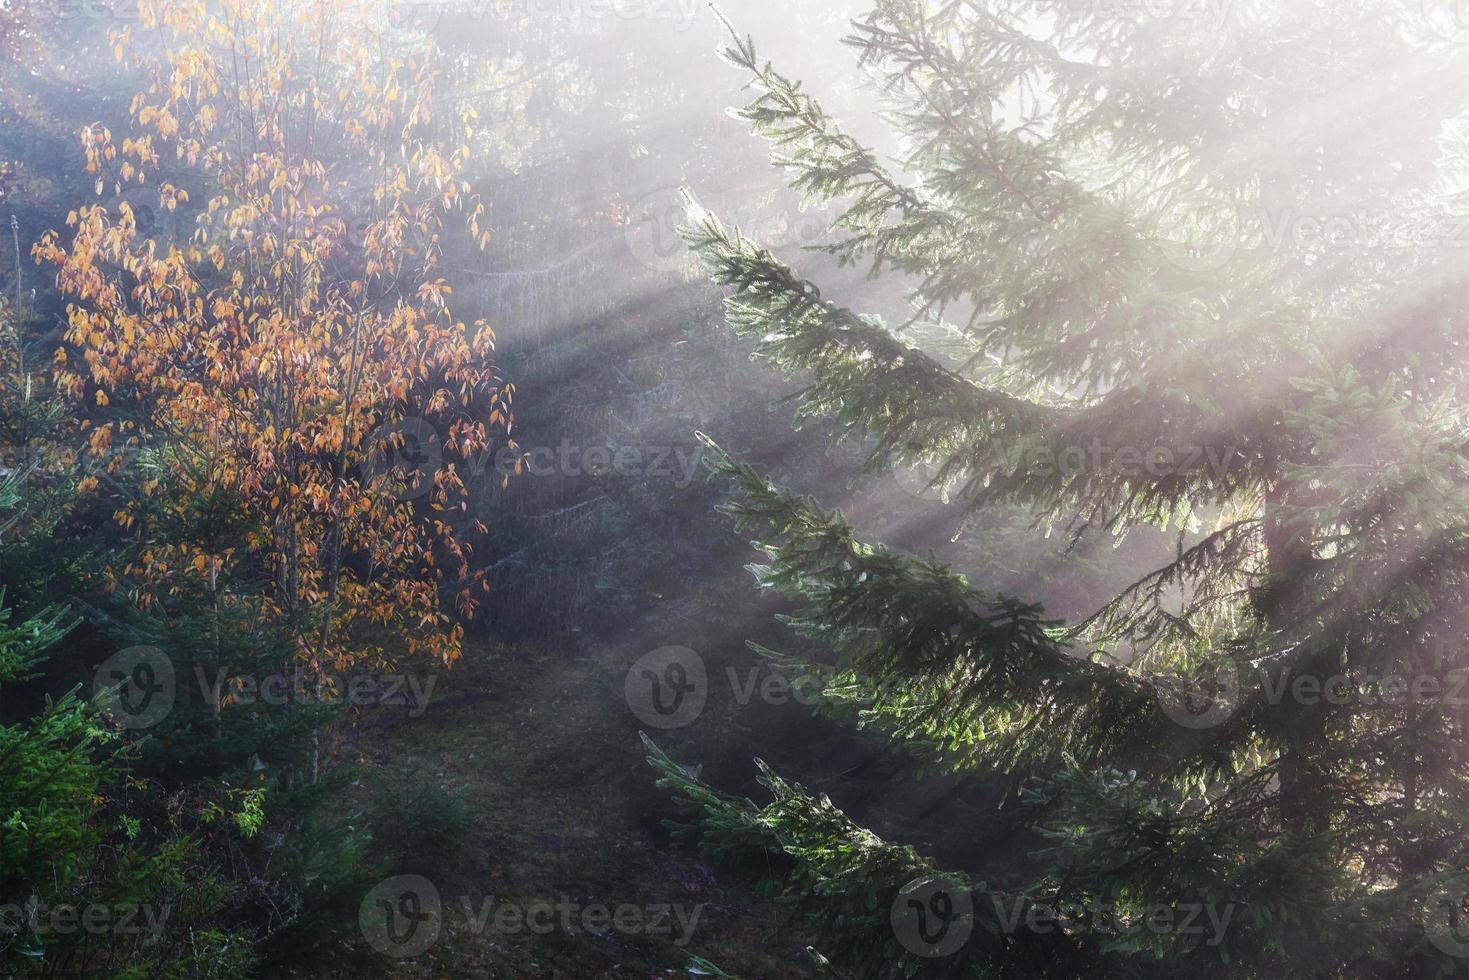 bela névoa da manhã e raios de sol na floresta de pinheiros de outono foto